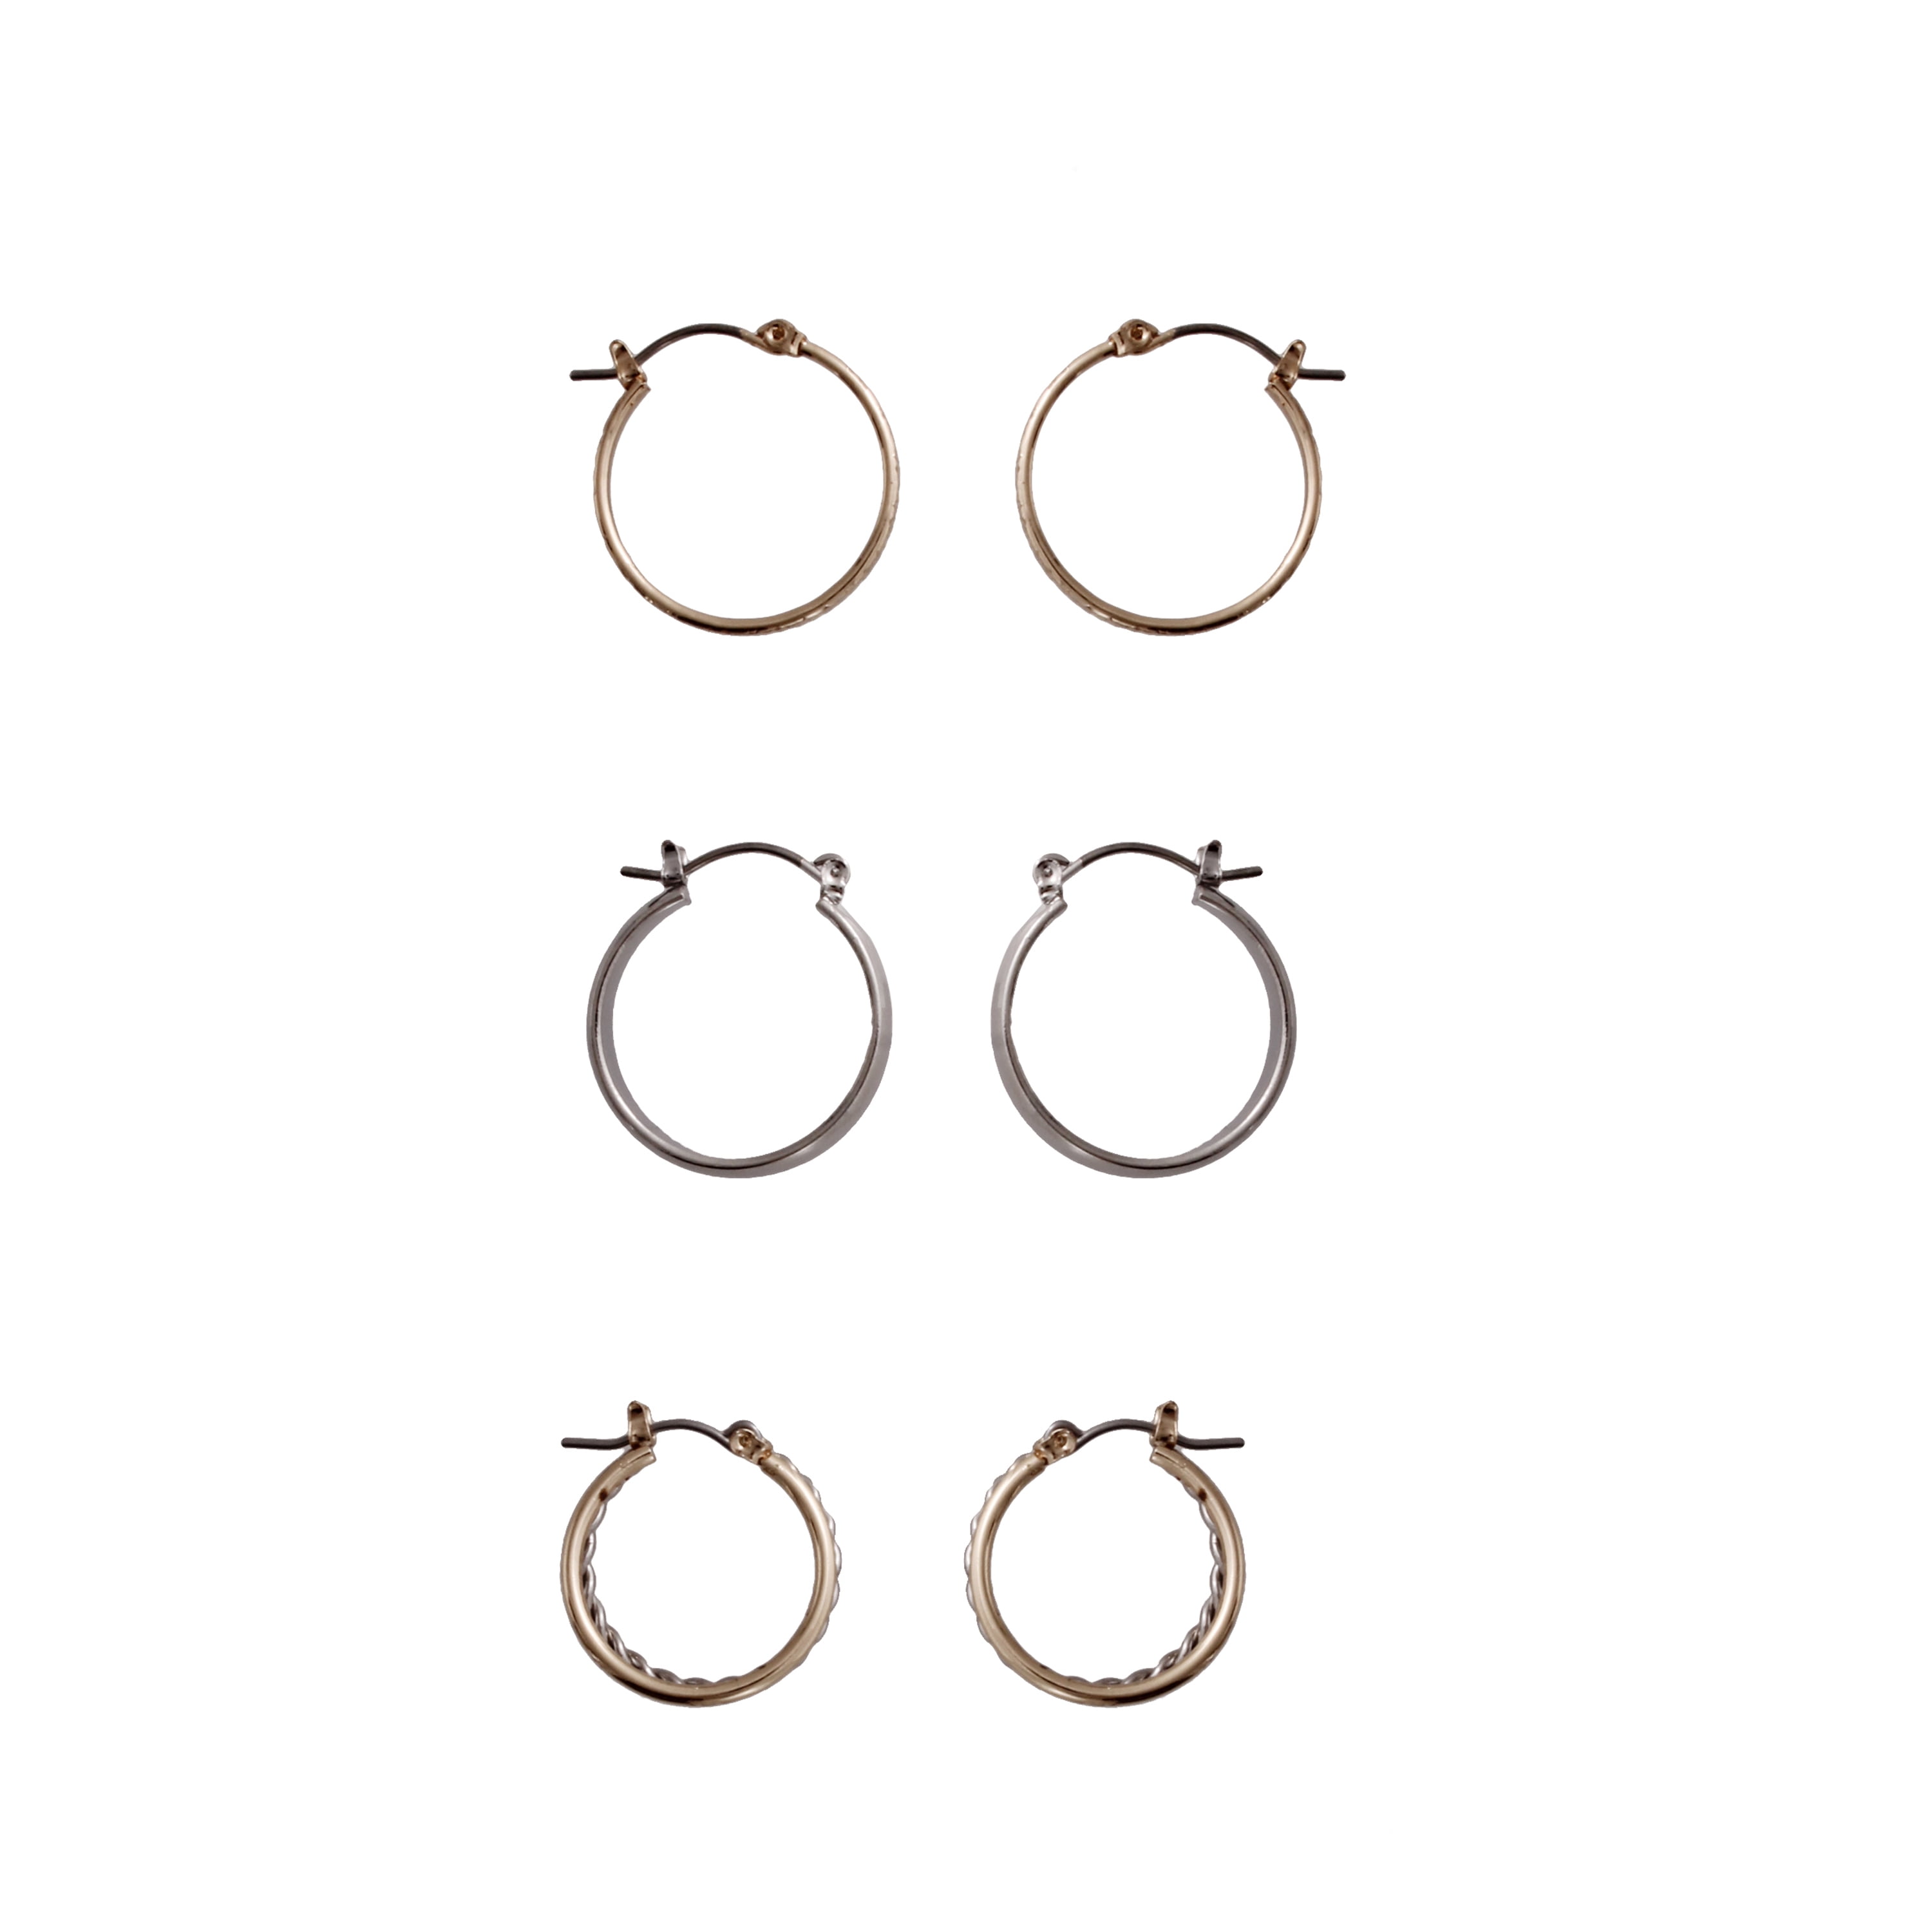 Basile Fine Gifts Stainless Steel Cross Ear Hoop Earrings Jewelry For Women Best Gift For Girls